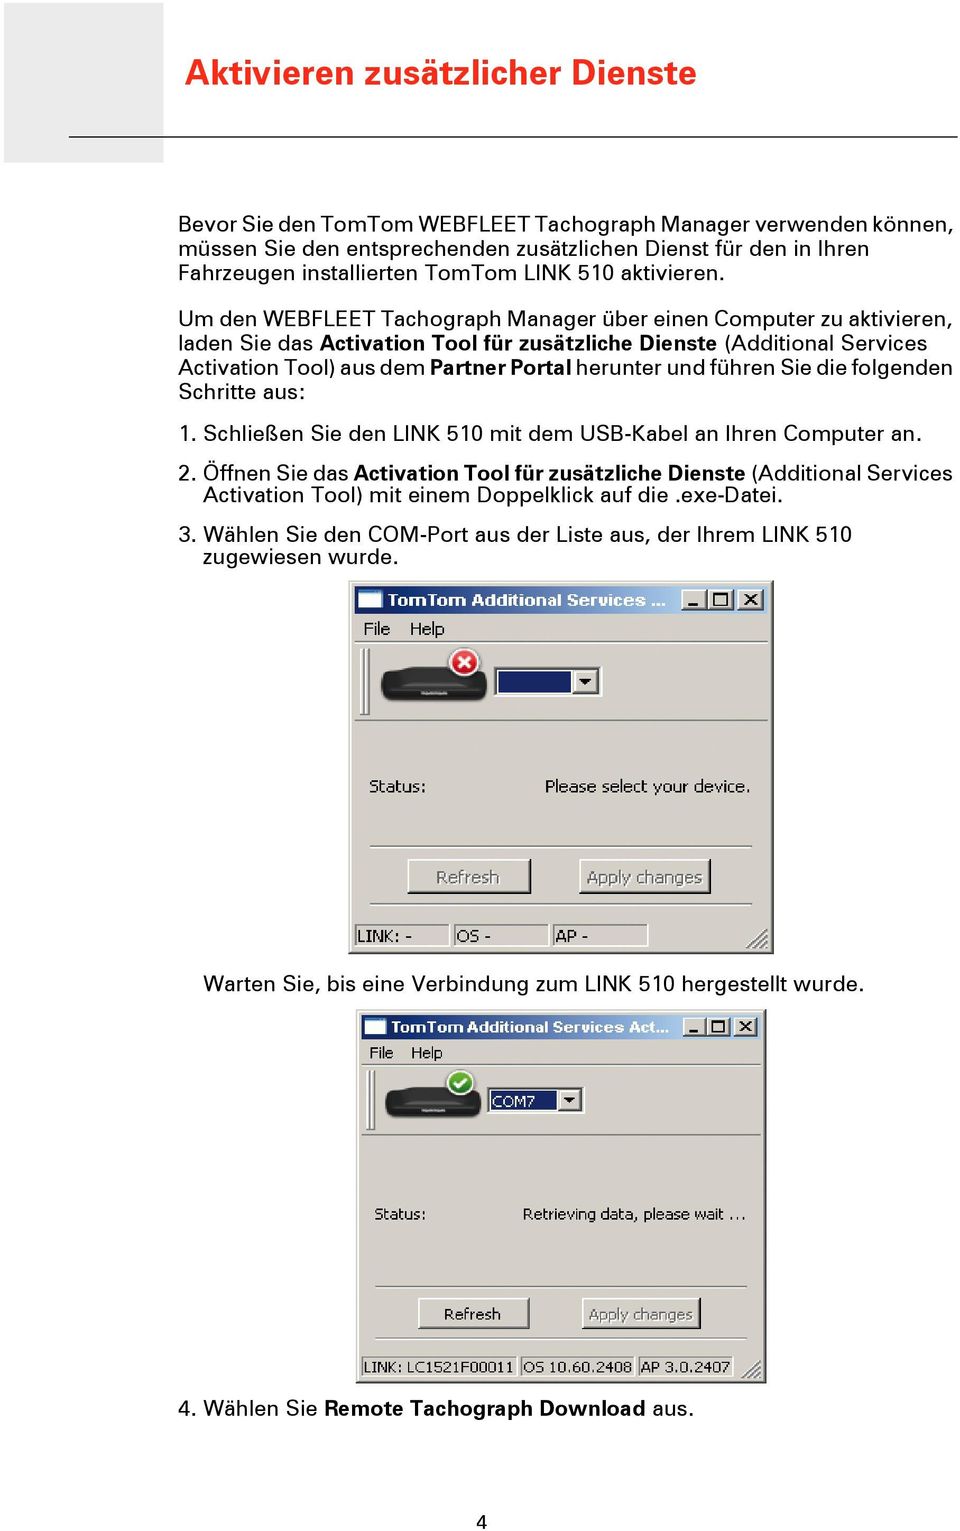 Um den WEBFLEET Tachograph Manager über einen Computer zu aktivieren, laden Sie das Activation Tool für zusätzliche Dienste (Additional Services Activation Tool) aus dem Partner Portal herunter und